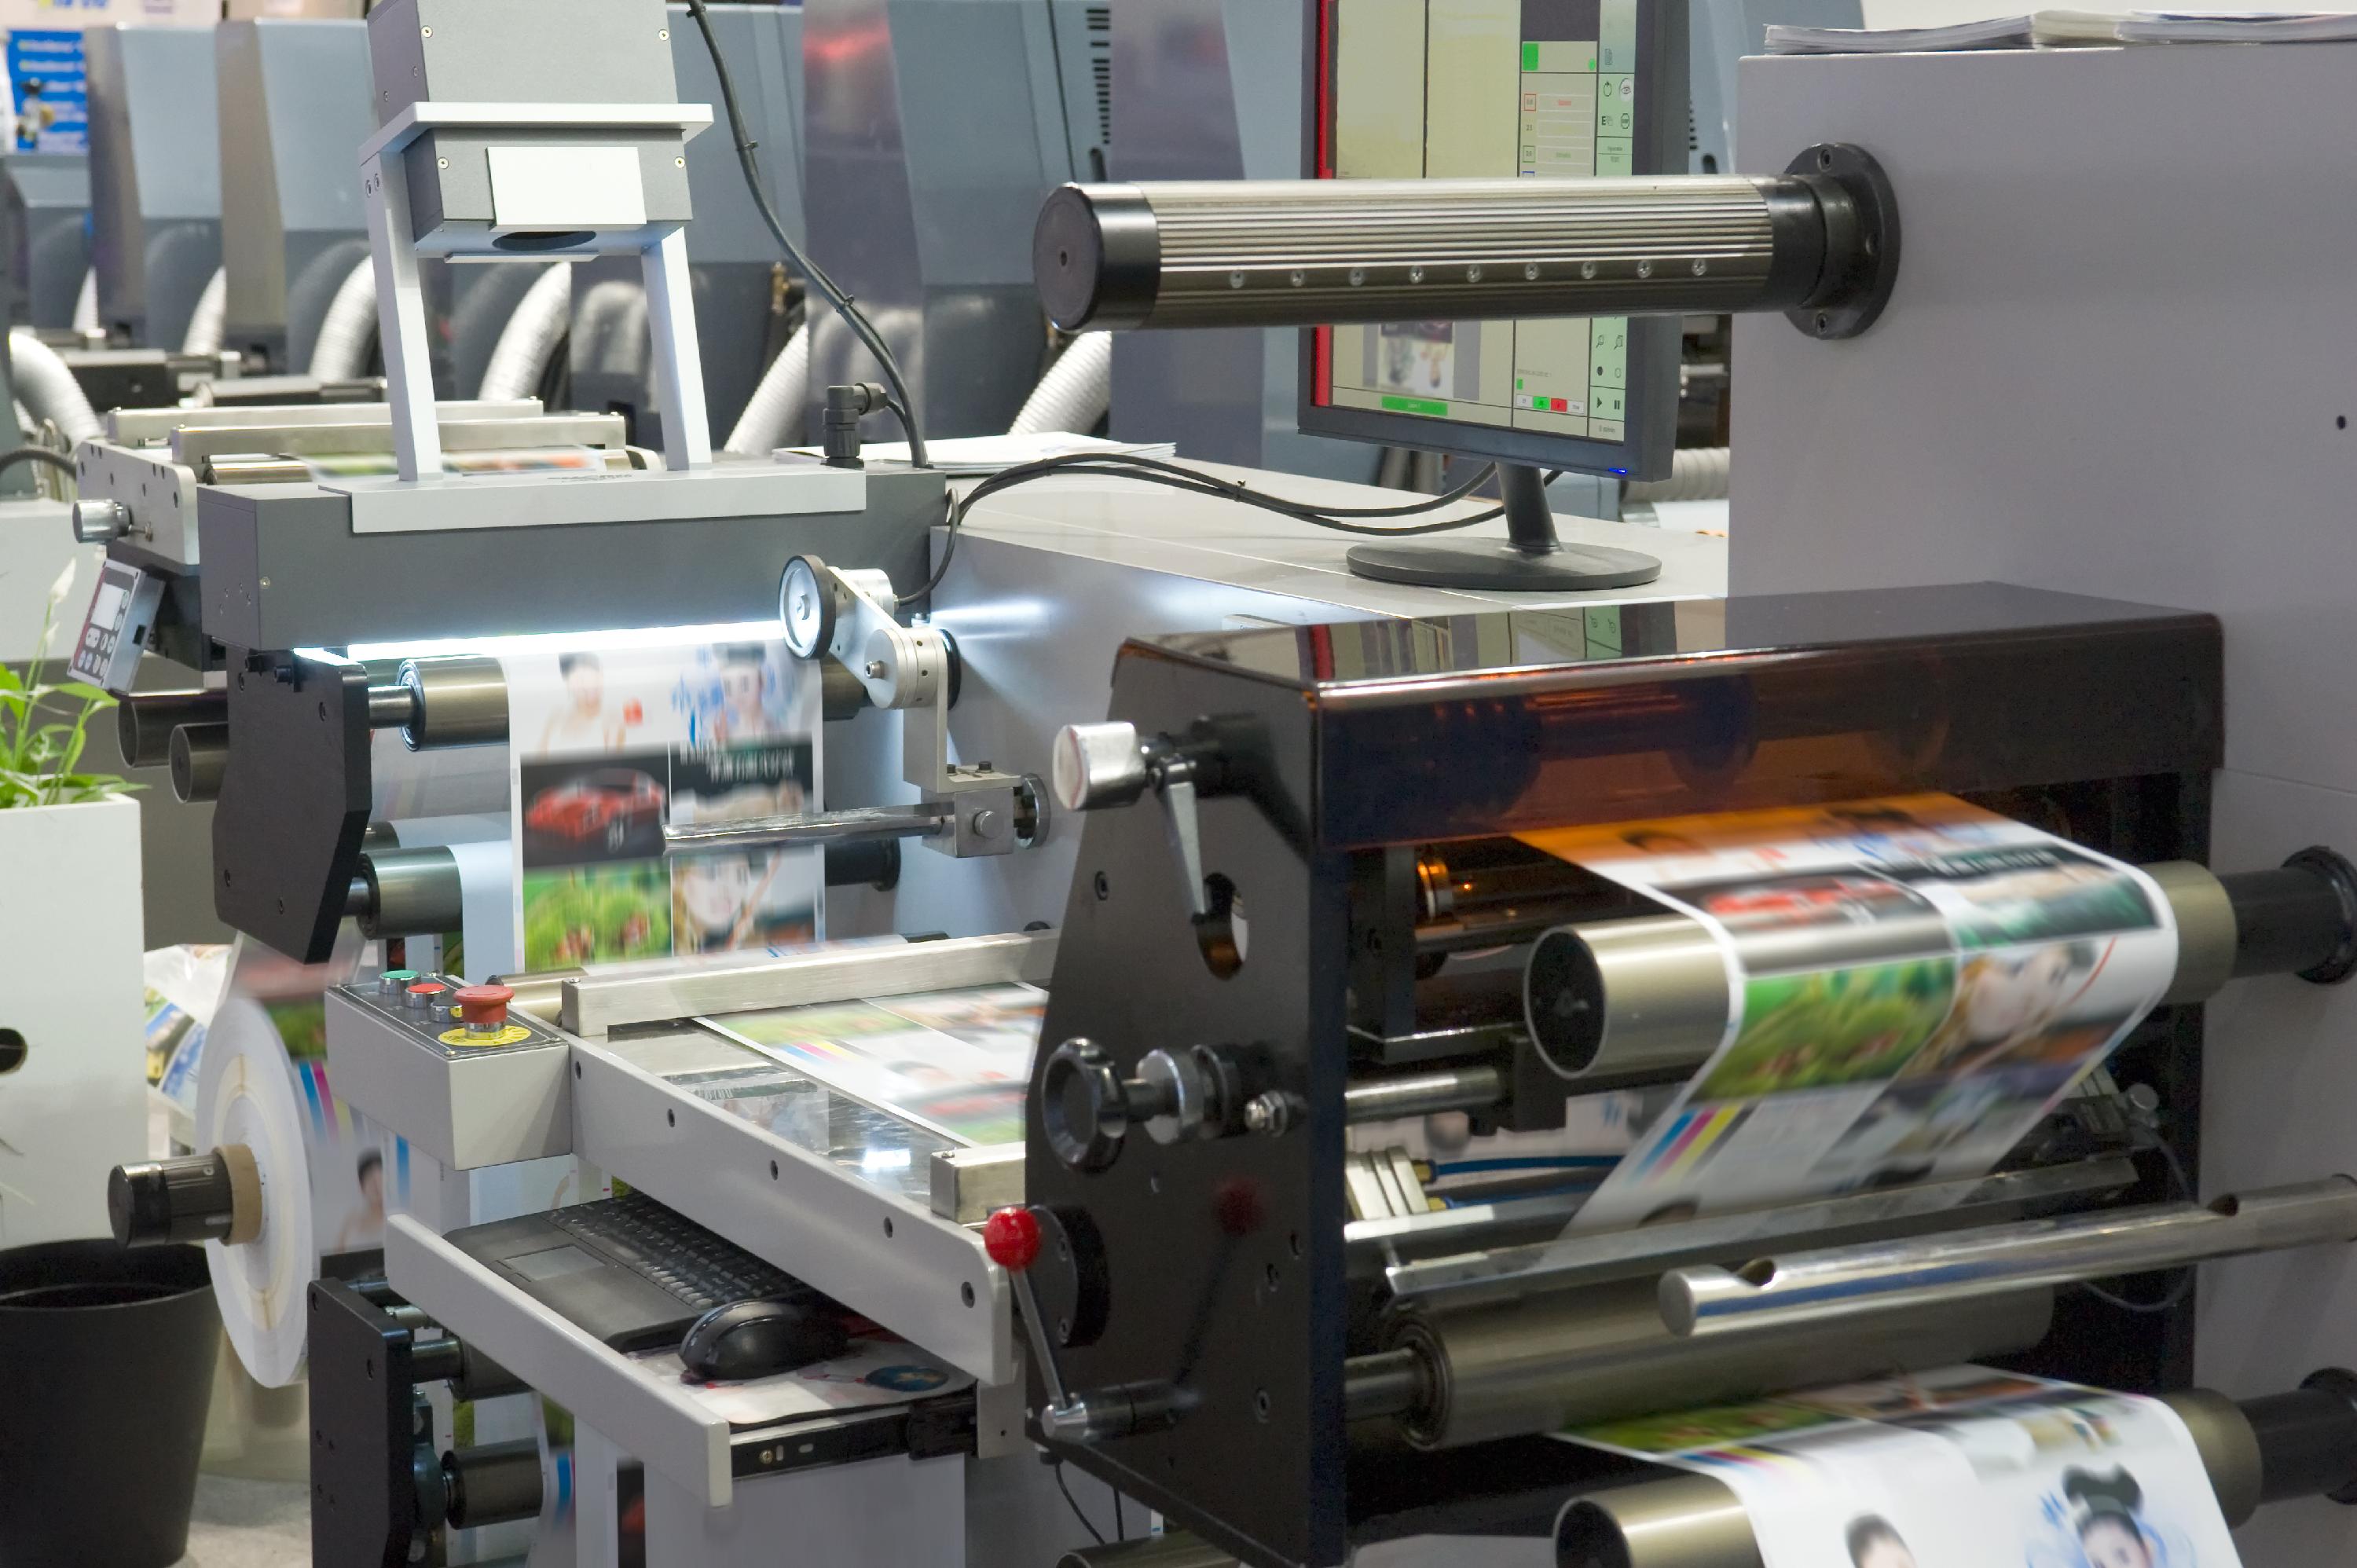 L'imprimeur assure aussi bien la partie commerciale que technique de son métier. Il règle les machines et assure leur maintenance pour garantir leur bon fonctionnement. © Alterfalter, Adobe Stock.